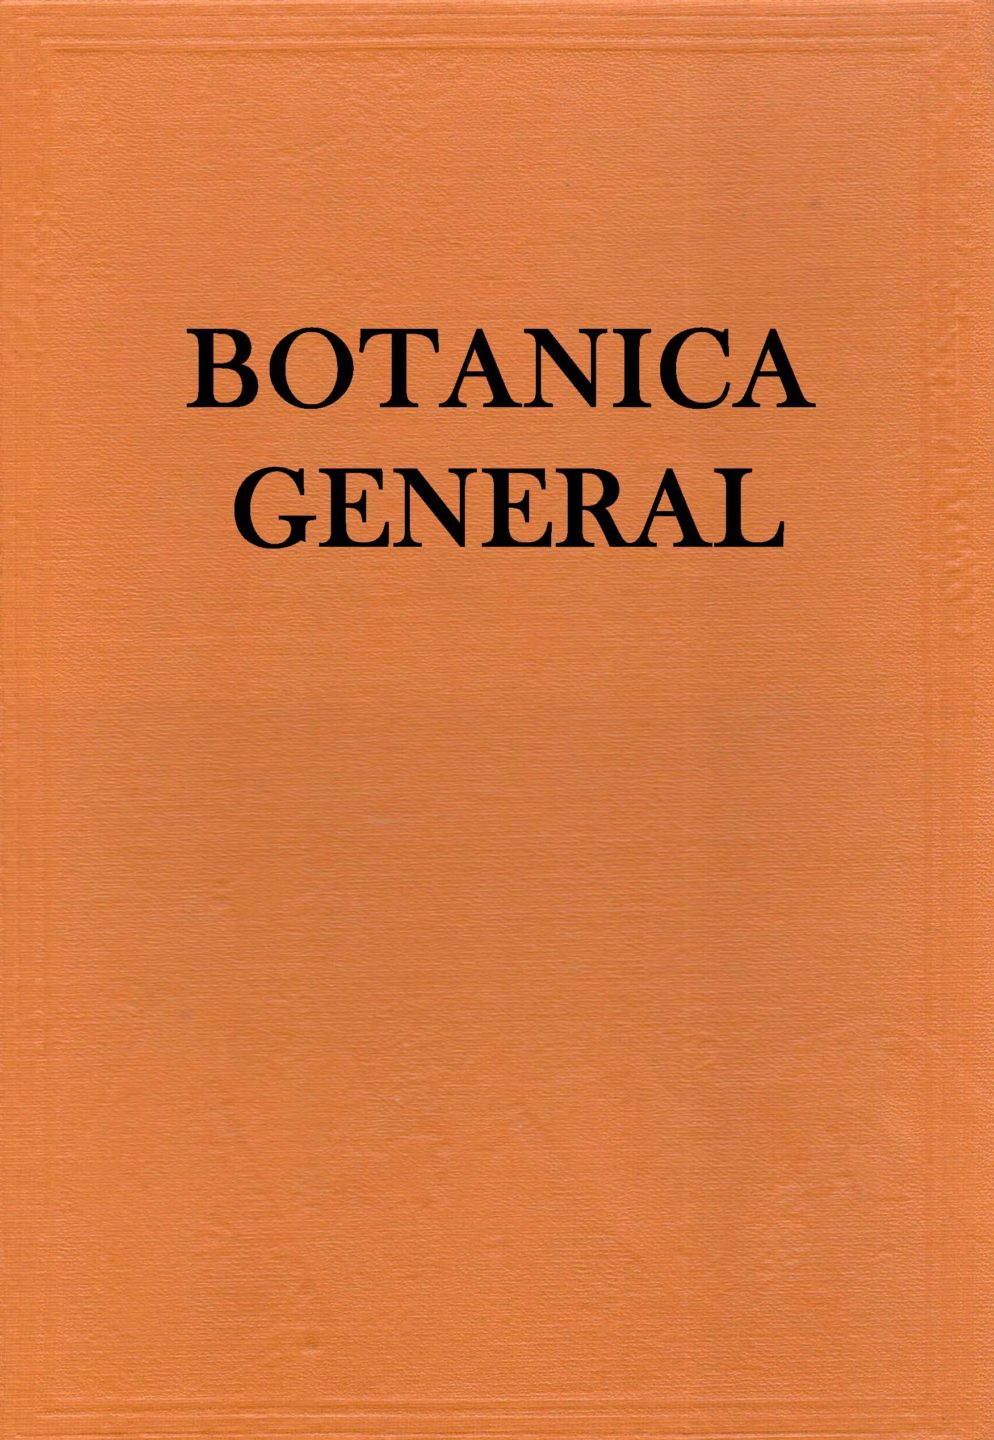 Botánica General 1 Edición Richard M. holman PDF